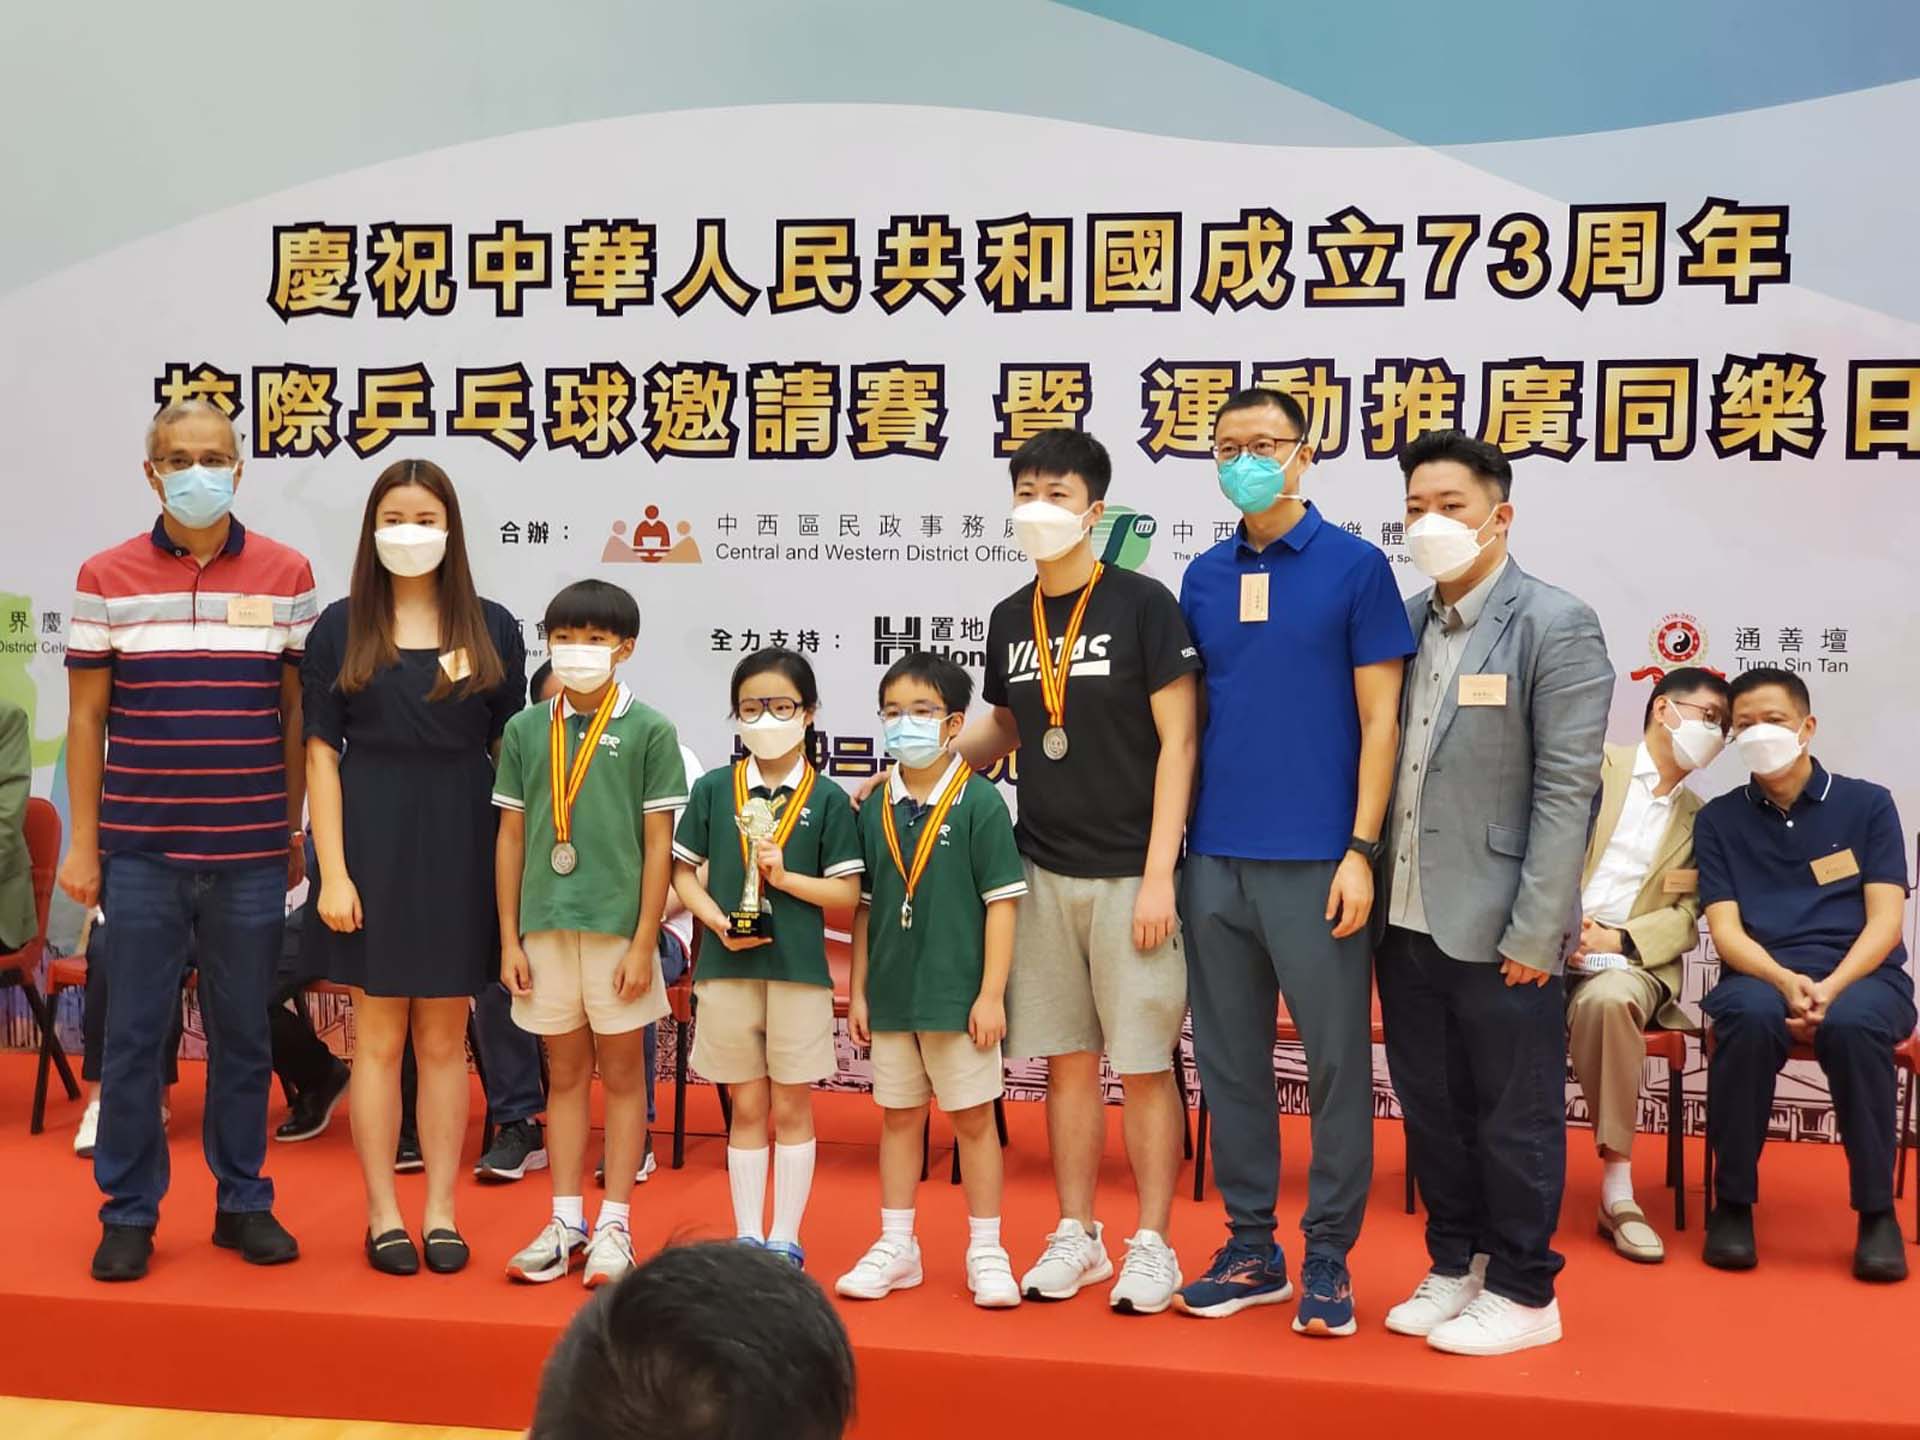 2022.09.11 慶祝中華人民共和國成立73周年 校際乒乓球邀請賽